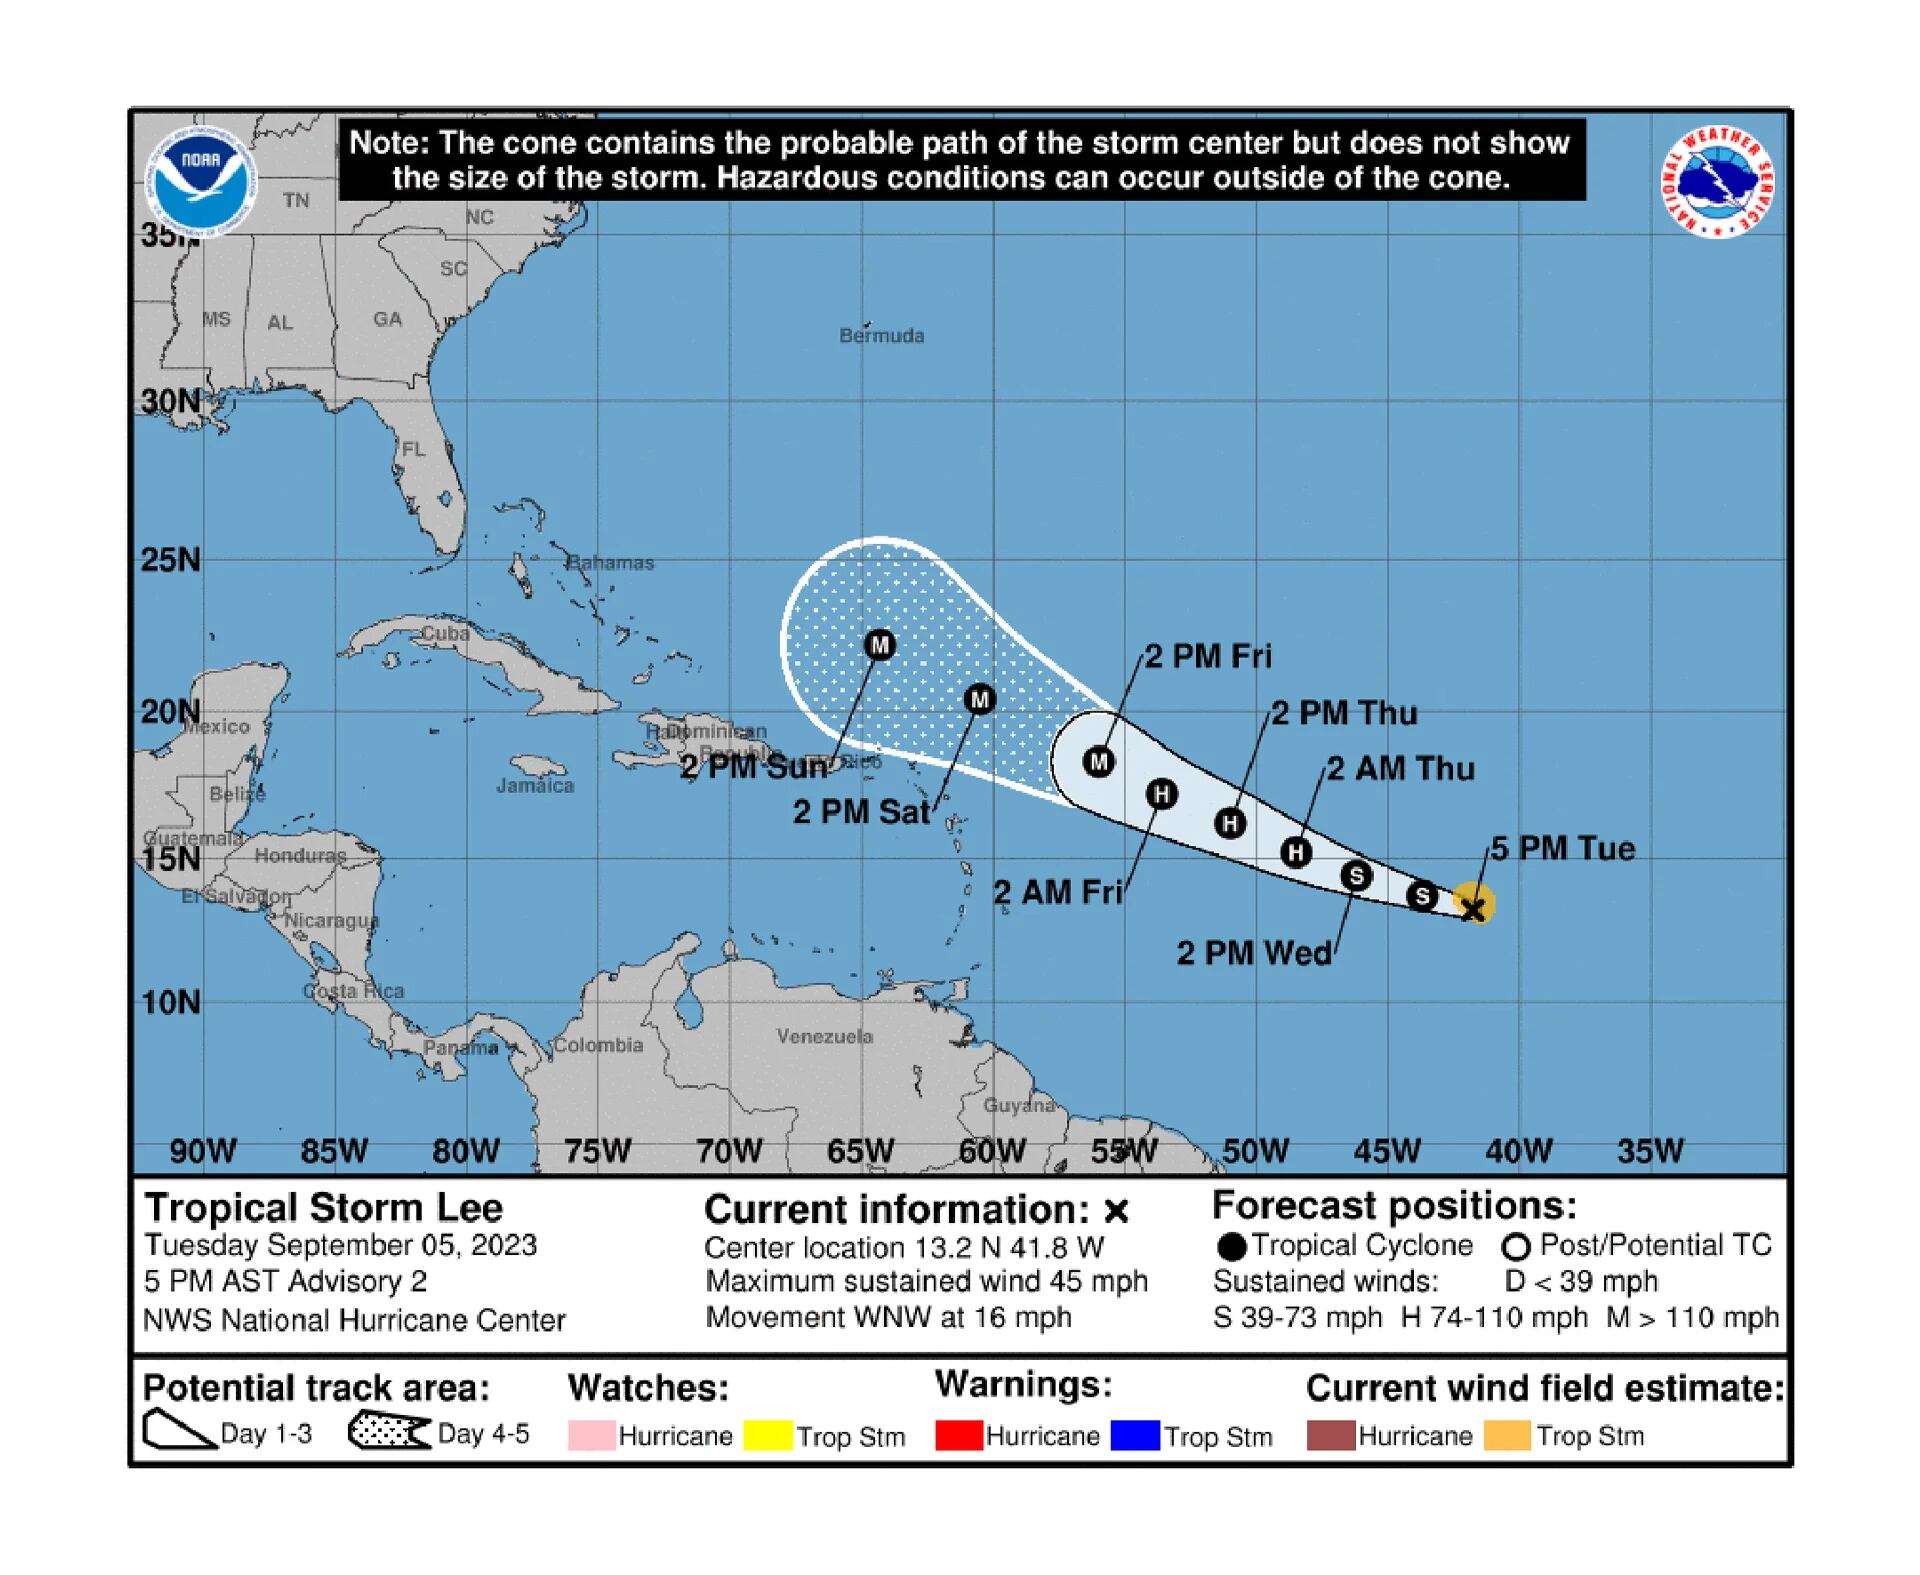 Los meteorólogos pronosticaron que la tormenta tropical Lee se convertirá en un huracán “extremadamente peligroso” rumbo al Caribe